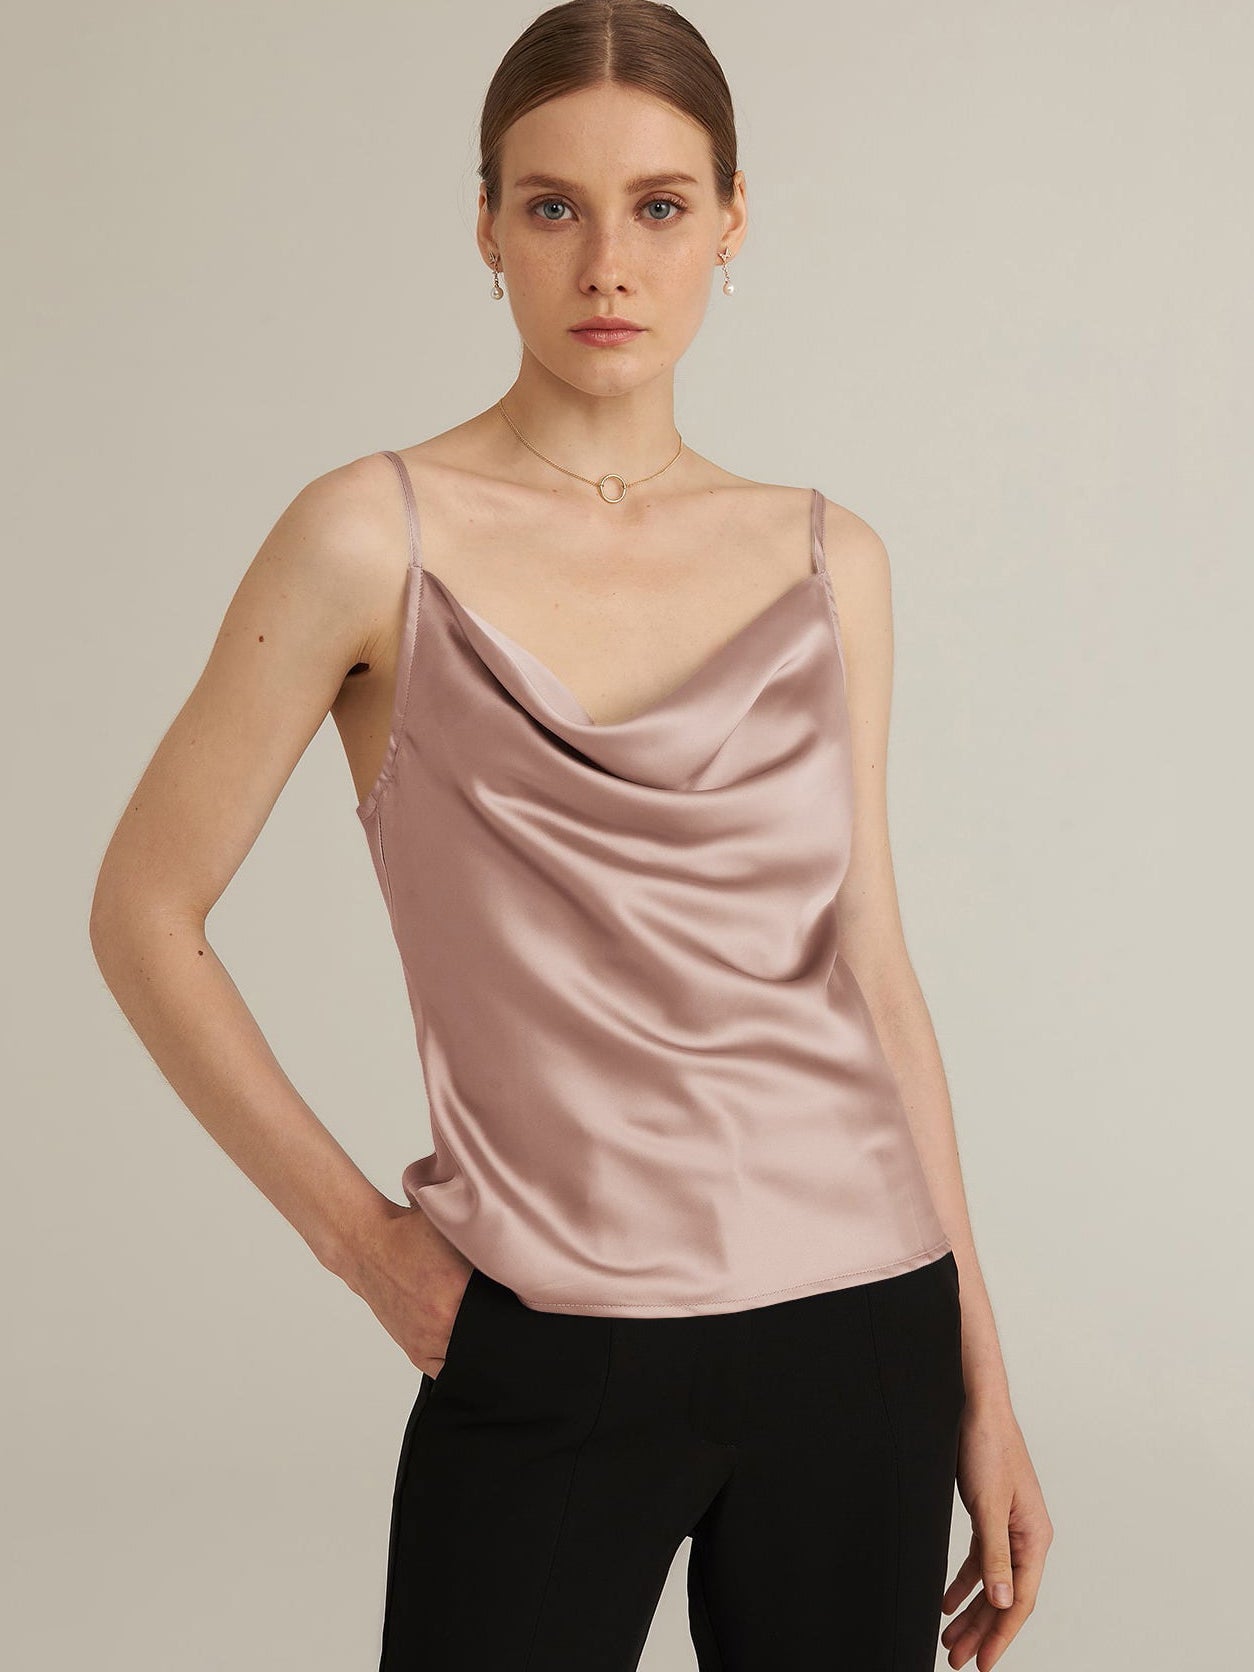 Camisoles & Vests - Silk & Lace Camis & Vests